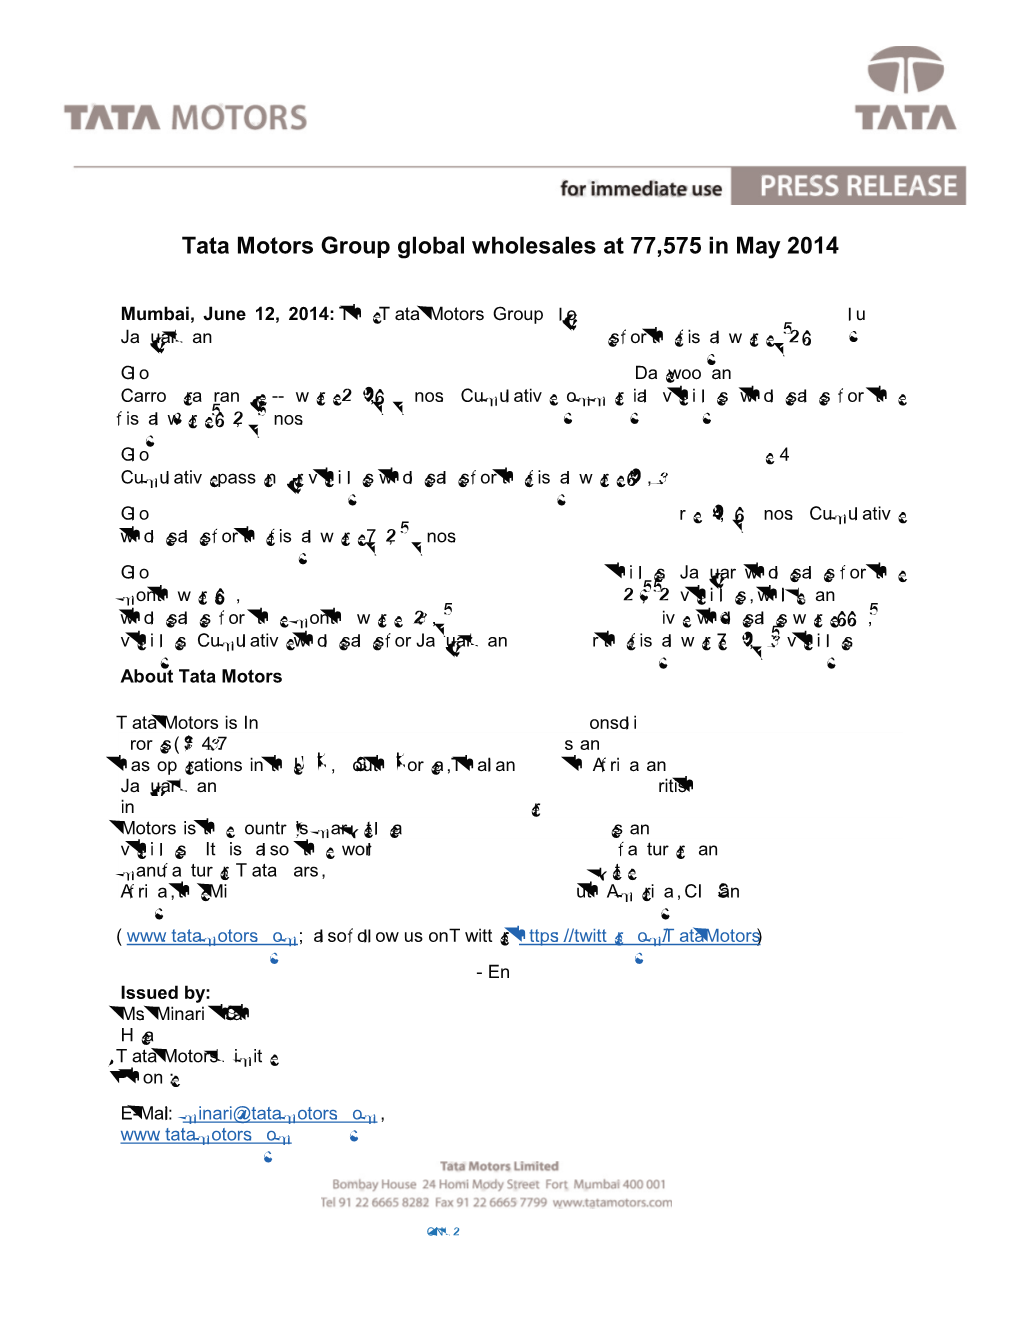 Tata Motors Group Global Wholesales at 77,575 in May 2014